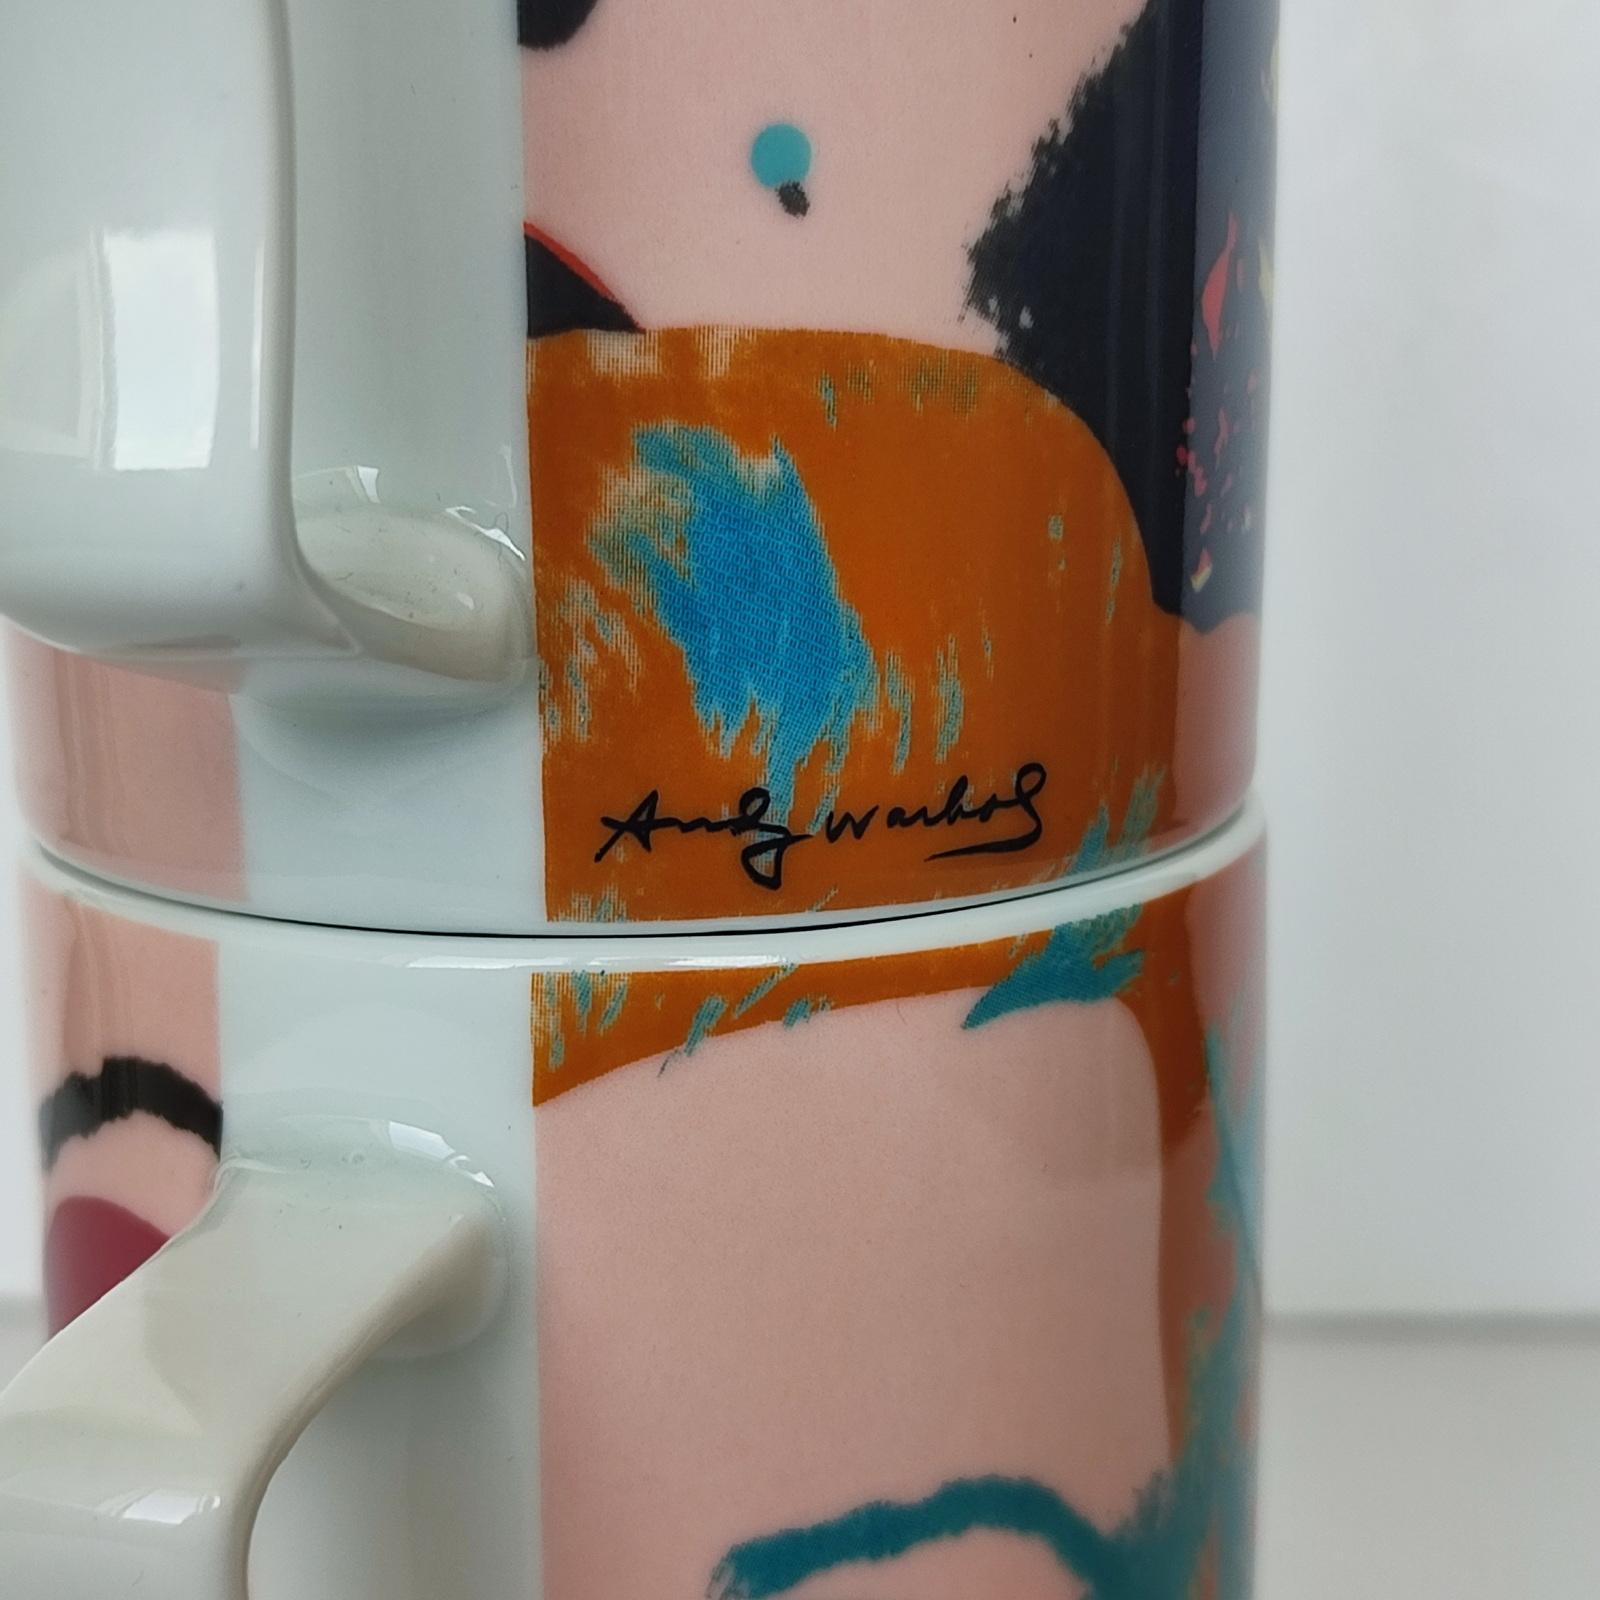 Andy Warhol Marilyn Monroe Rosenthal Studio Line Stacking Mug Set, FREE SHIPPING 3